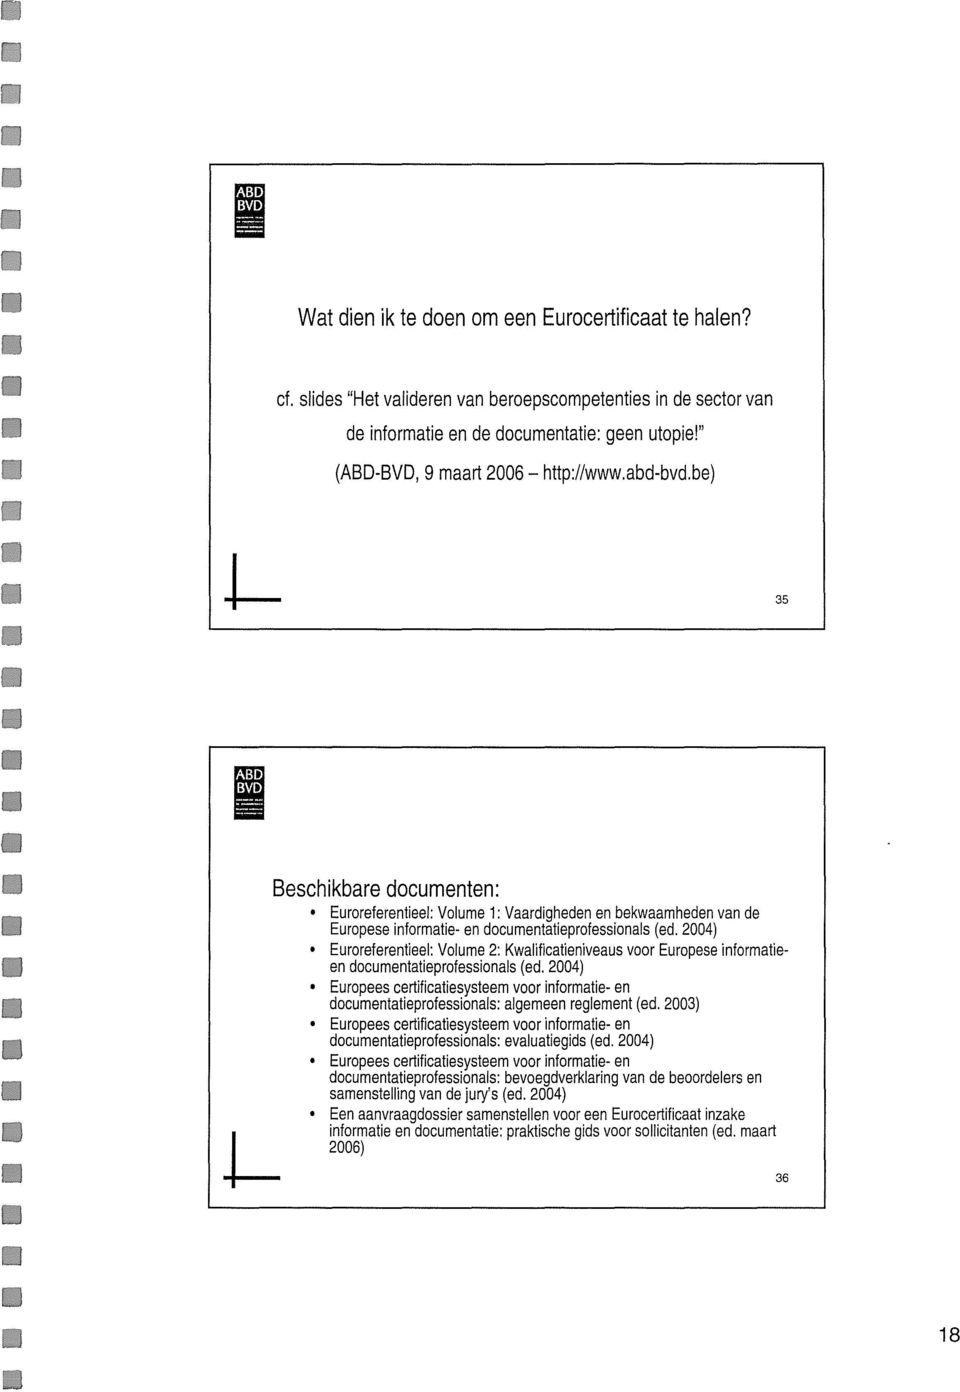 2004) Euroreferentieel: Volume 2: Kwaficatieniveaus voor Europese informatieen documentatieprofessionals (ed.